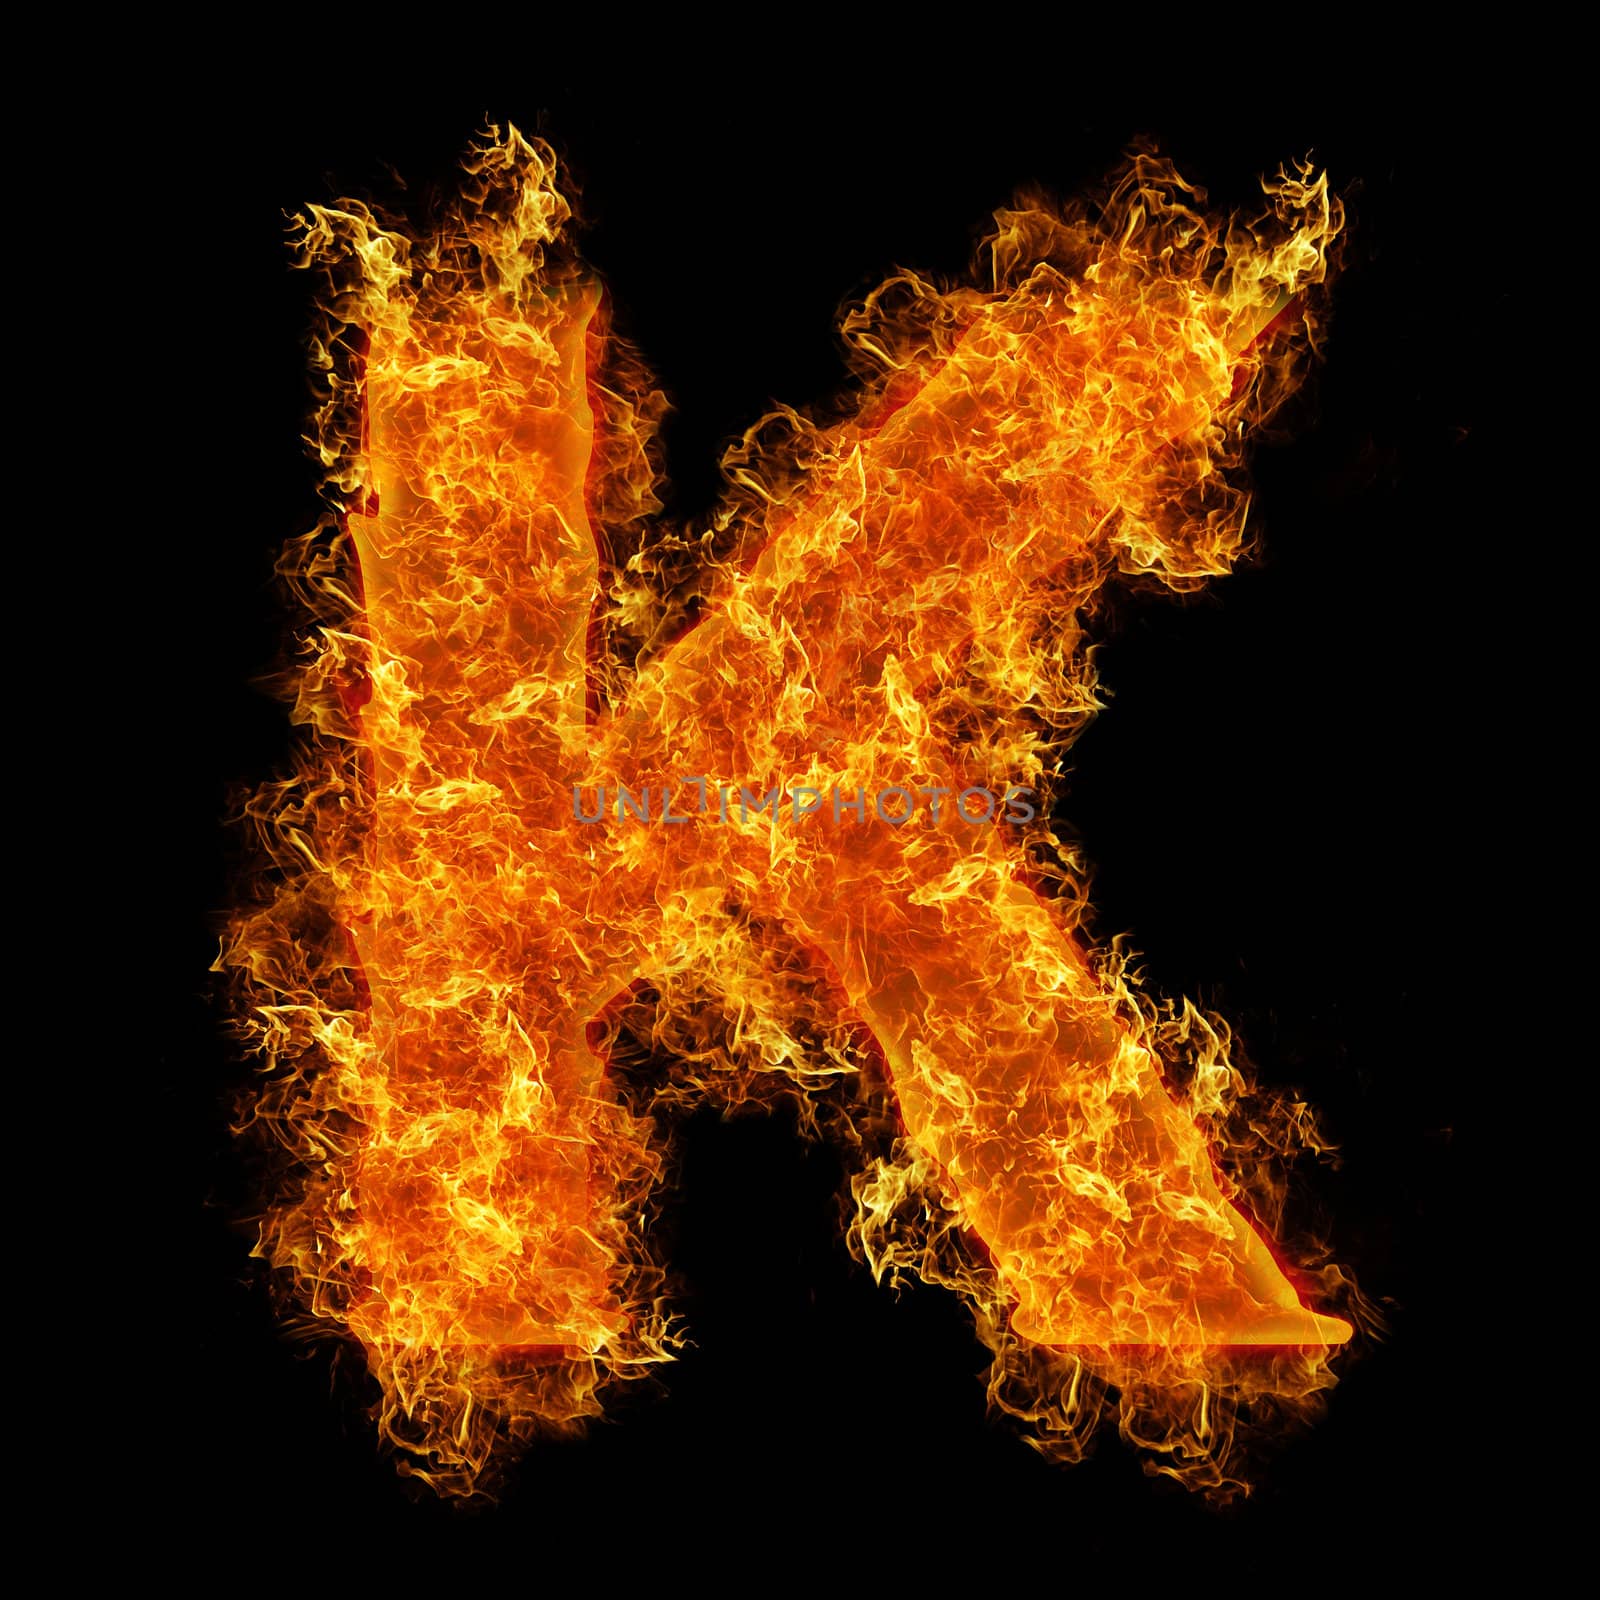 Fire letter K by rusak